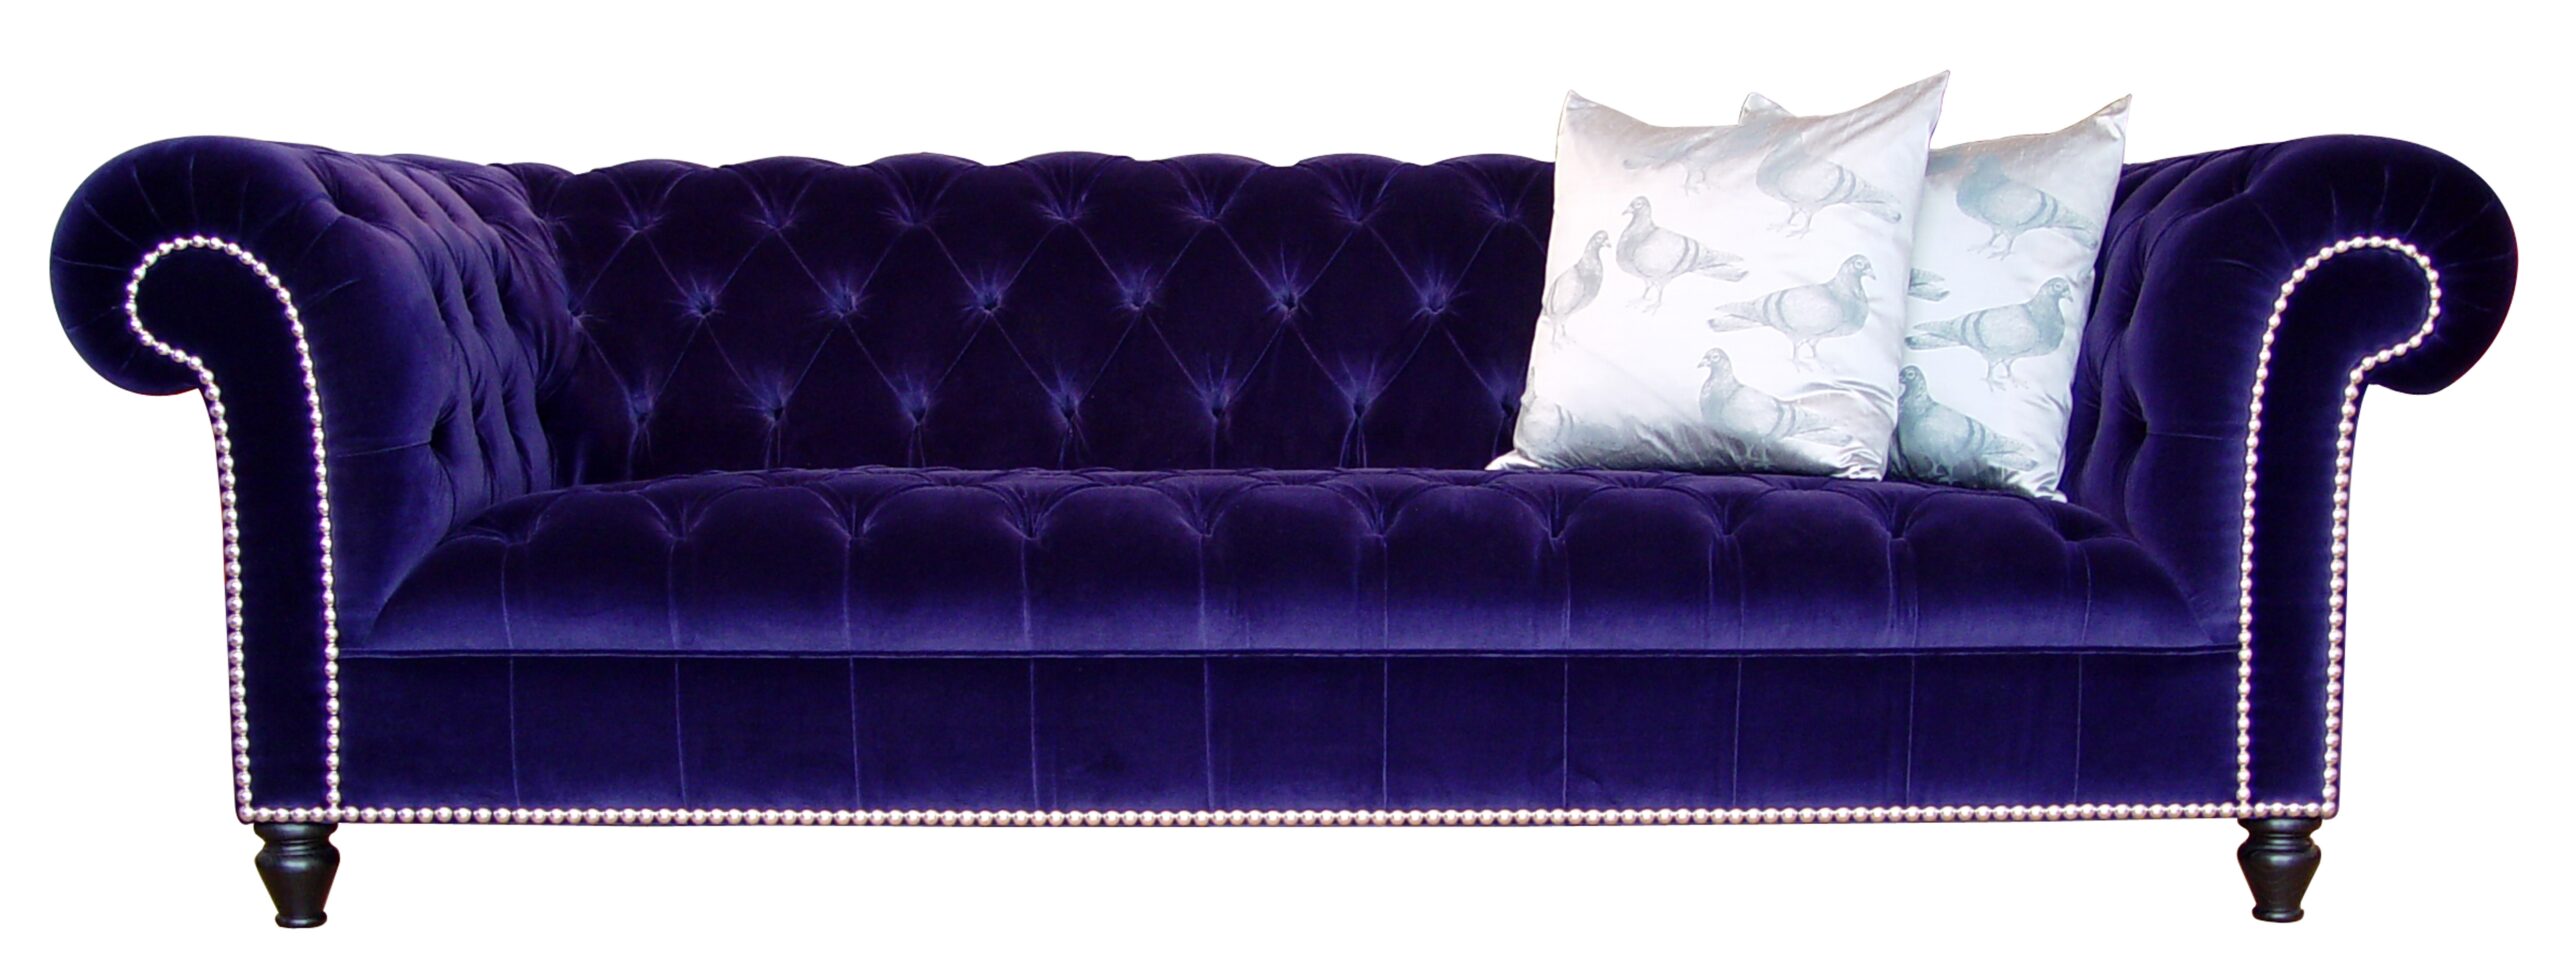 Velvet Purple Sofas